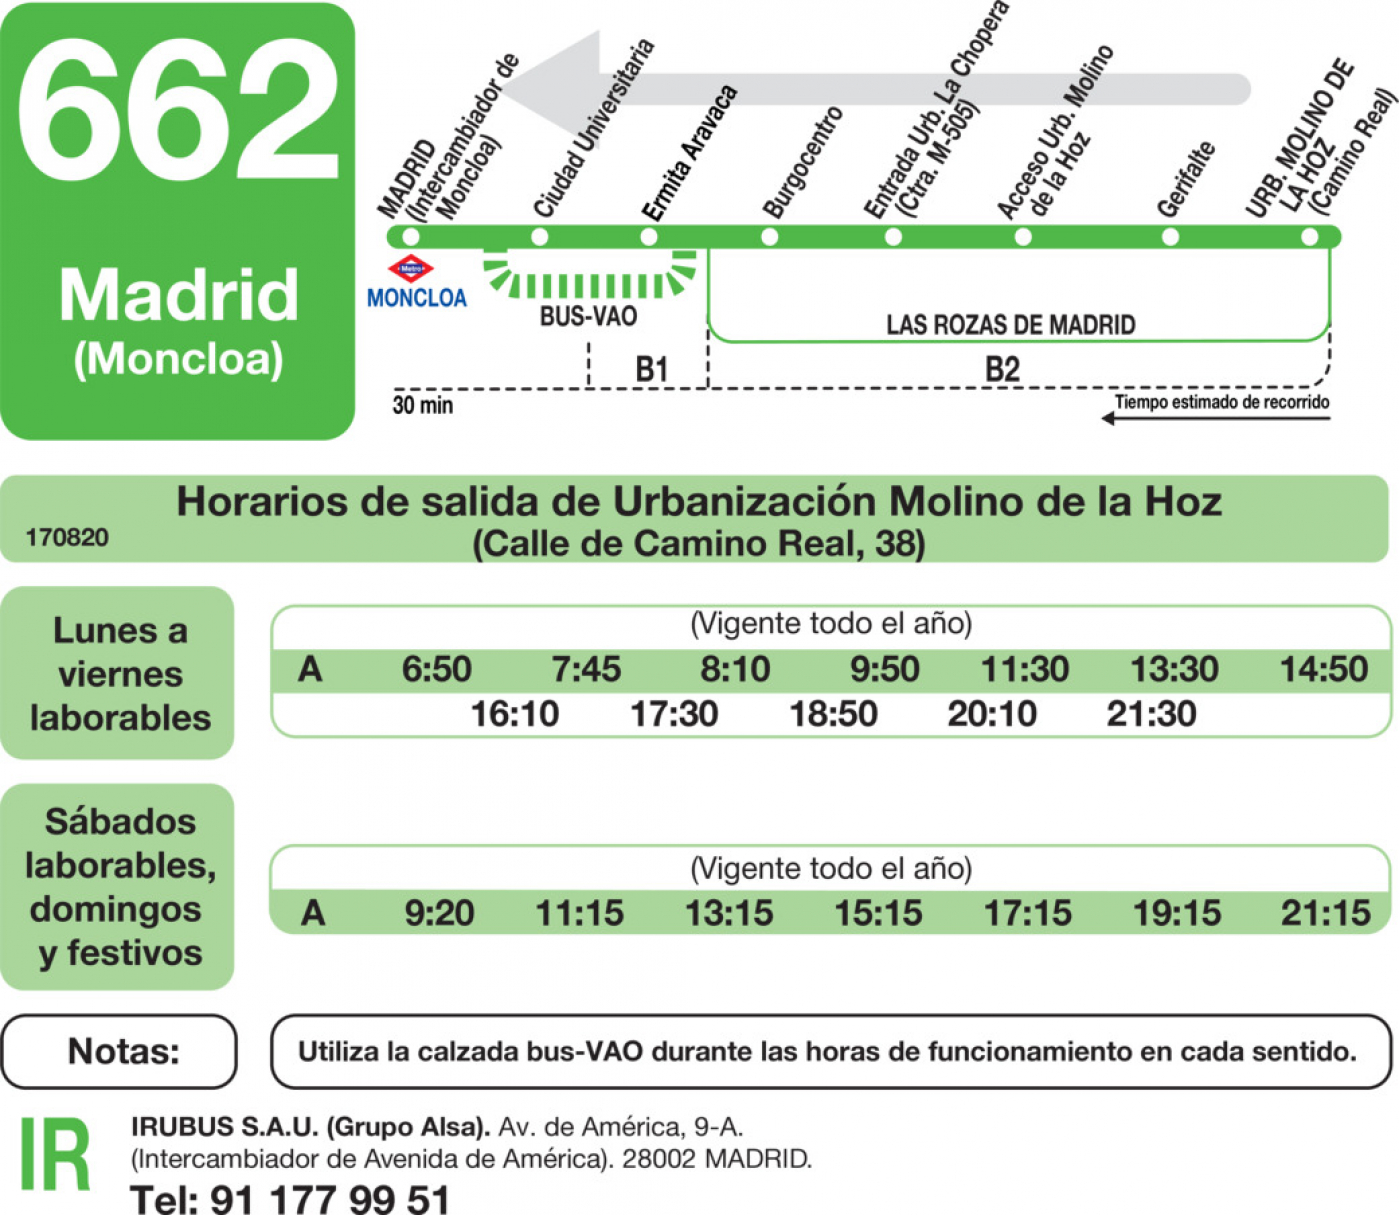 Magistrado Pantano cortar a tajos Horarios de autobús 662: Madrid (Moncloa) - Urbanización Molino de la Hoz